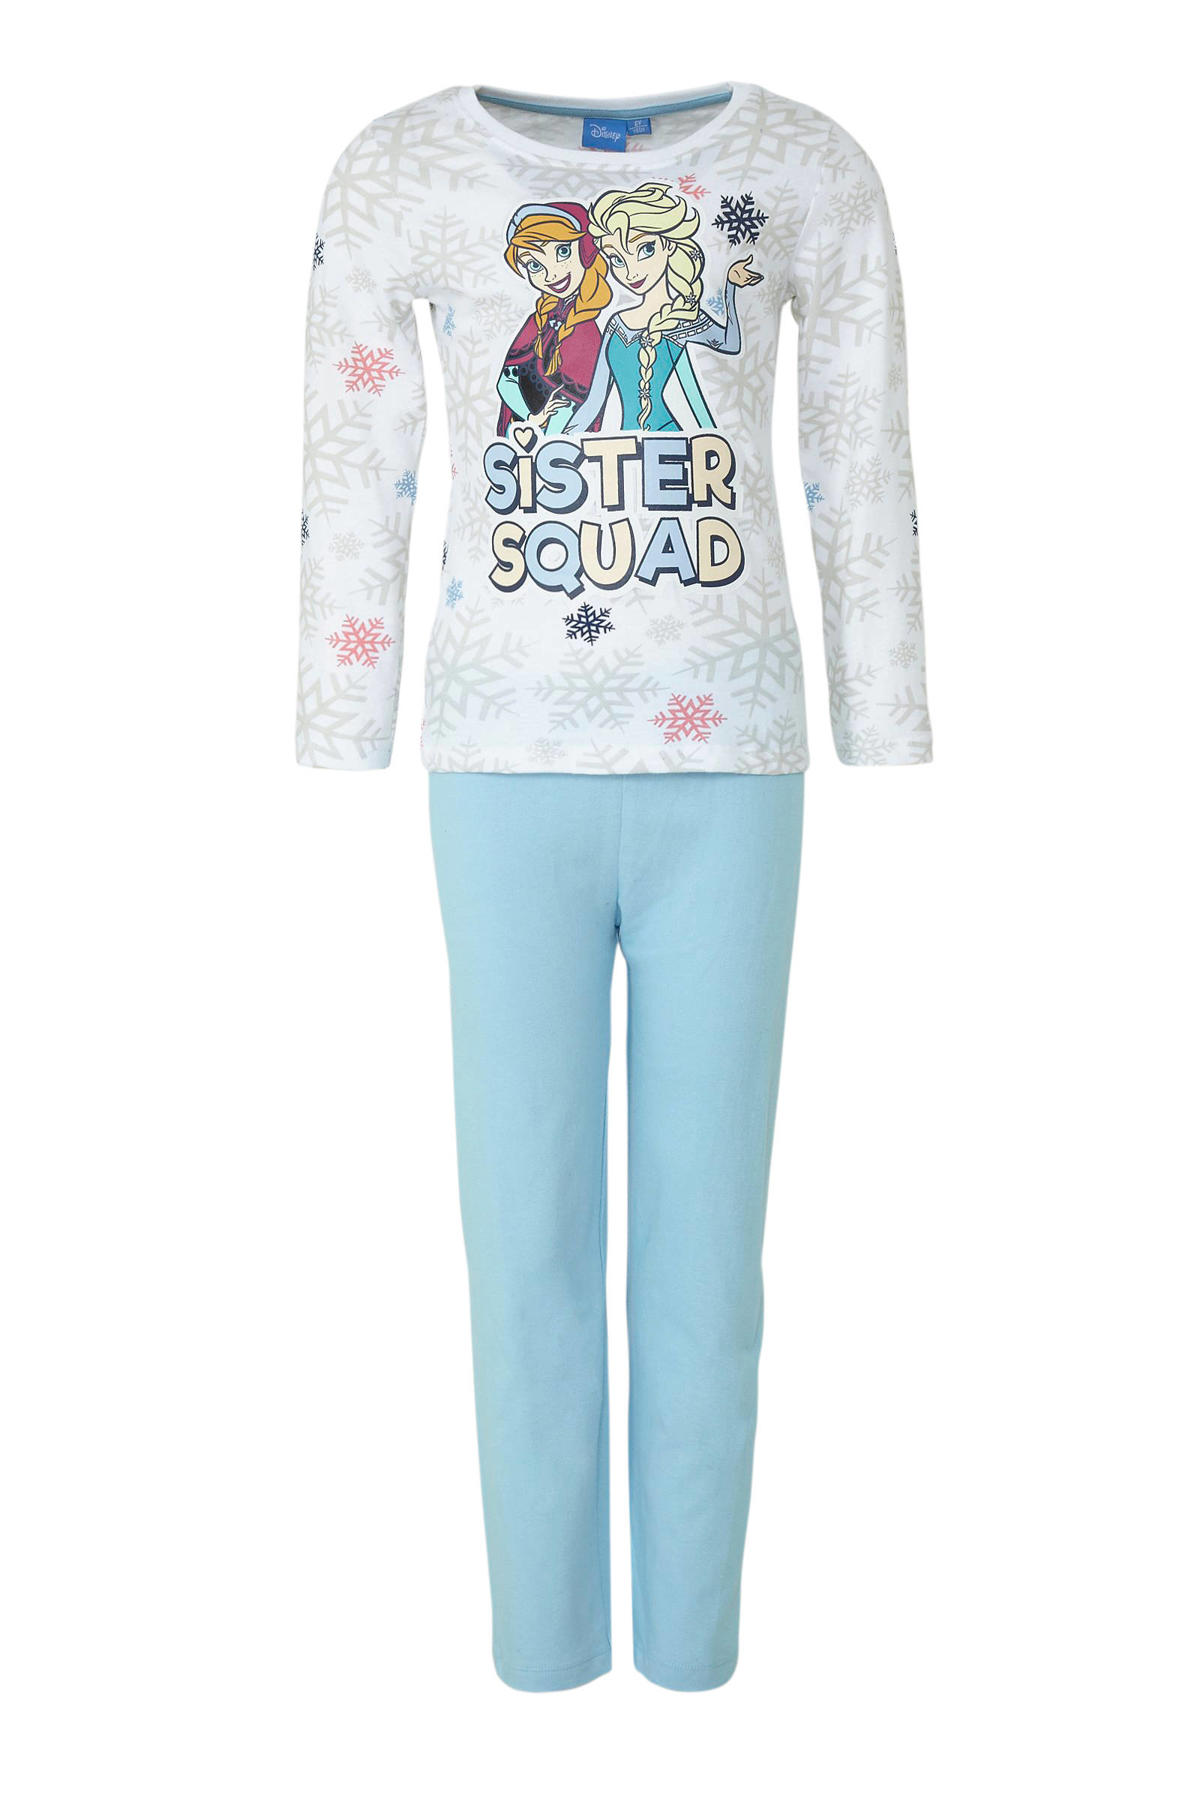 Streven Precies kraan Disney Frozen pyjama | wehkamp